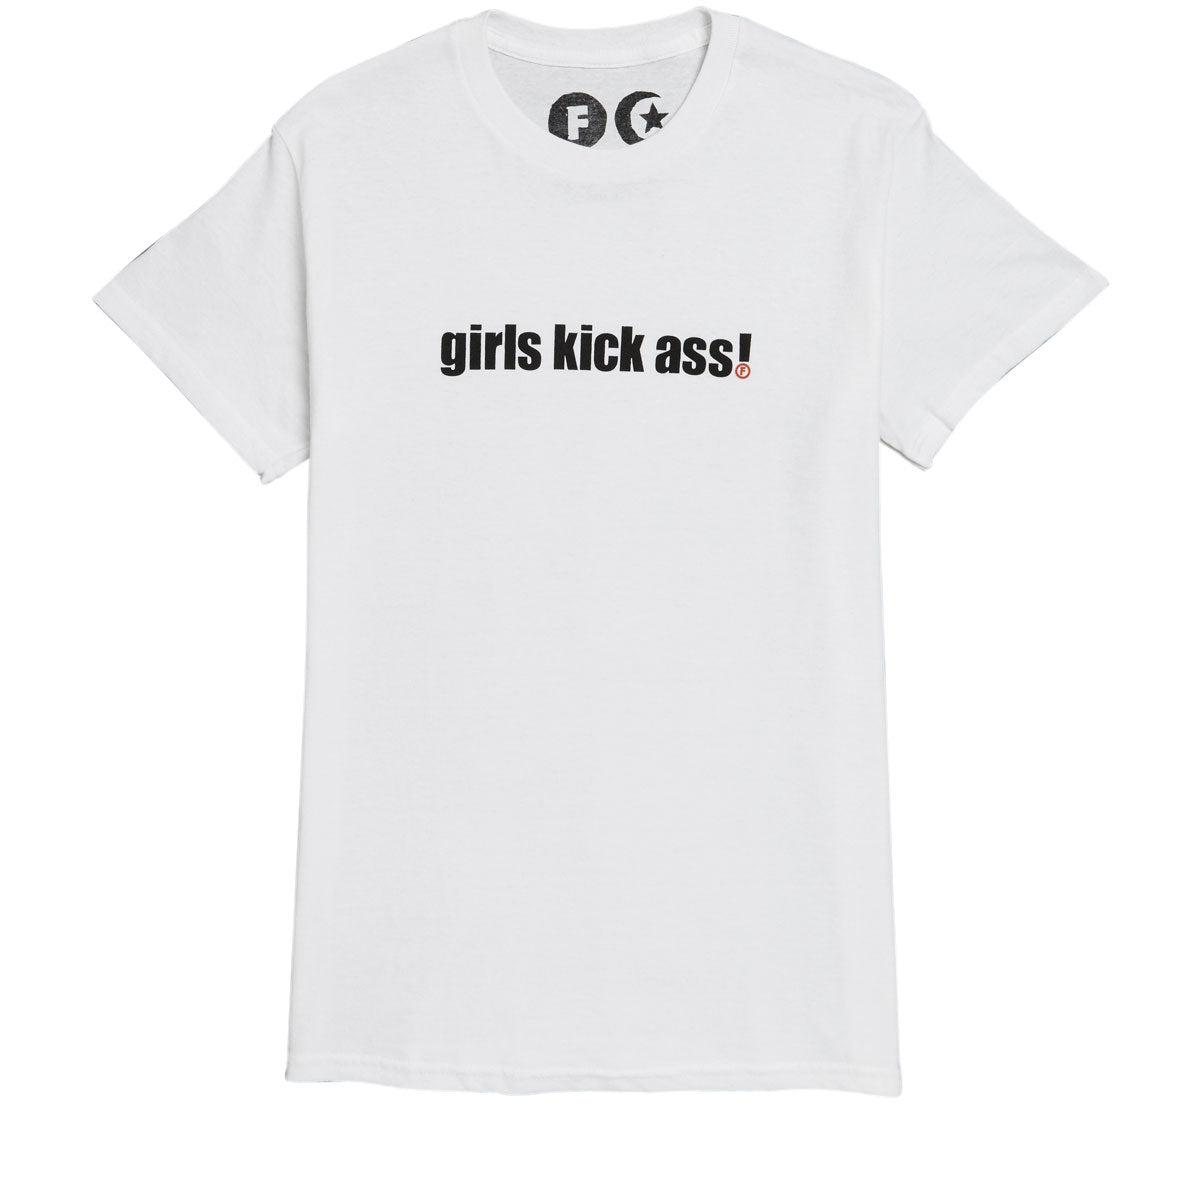 Foundation Girls Kick Ass T-Shirt - White image 1